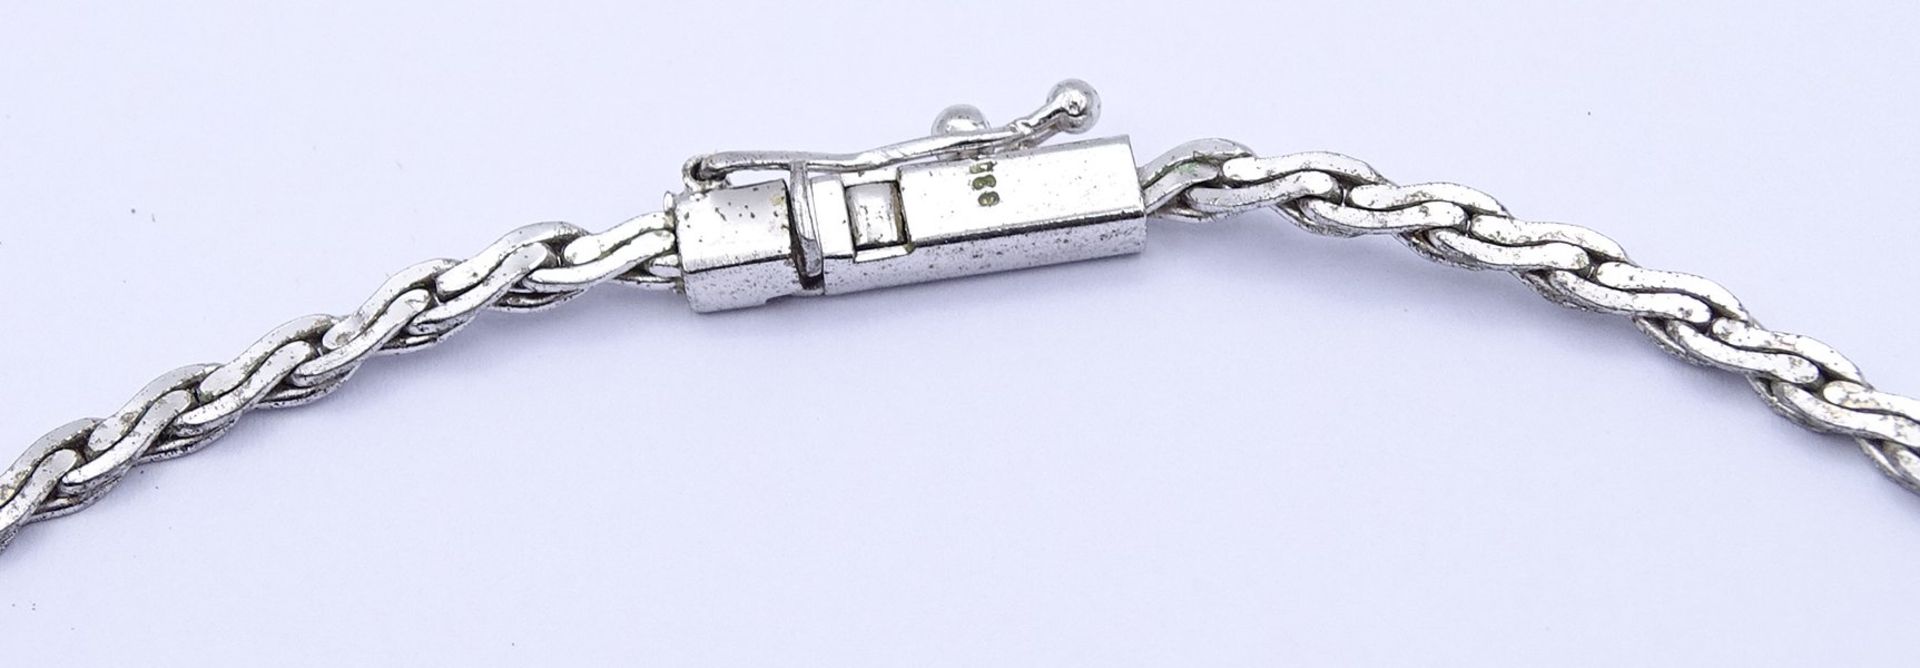 Halskette mit Saphire, Silber 835/000, L. 41,5cm, 15g. - Bild 3 aus 3